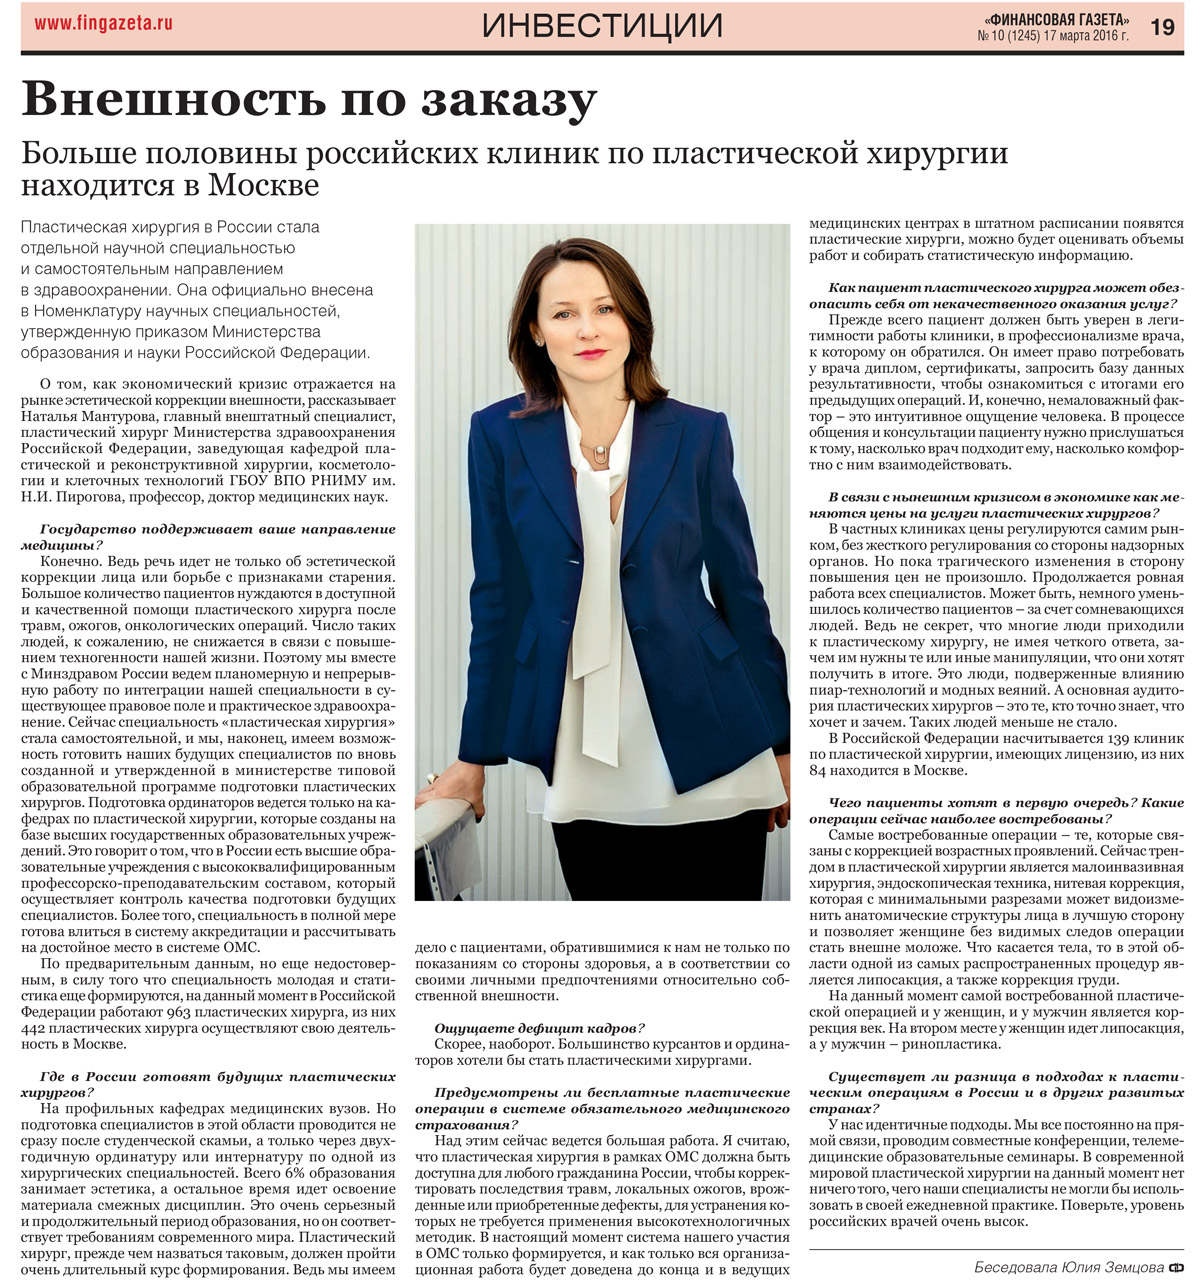 Интервью в "Финансовой газете" (№10 от 17.03.2016)